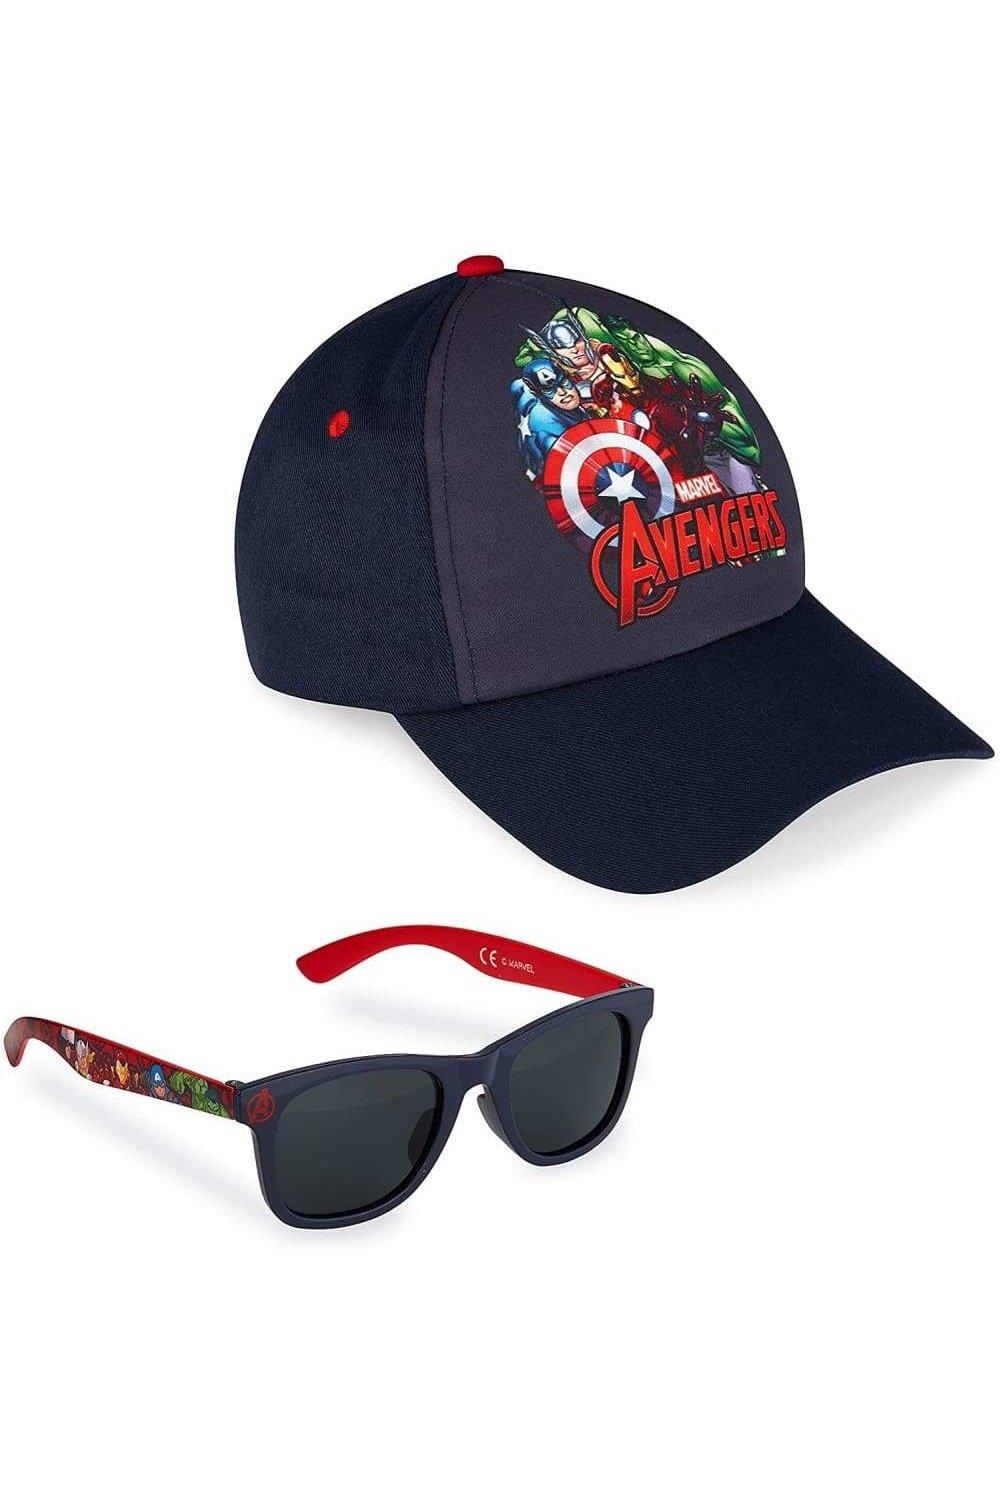 Кепка Мстителей и солнцезащитные очки Marvel, синий шапка roblox черная бейсболка с порошком женская бейсболка студенческая корейская версия солнцезащитной шляпы мужская и женская бейсболка